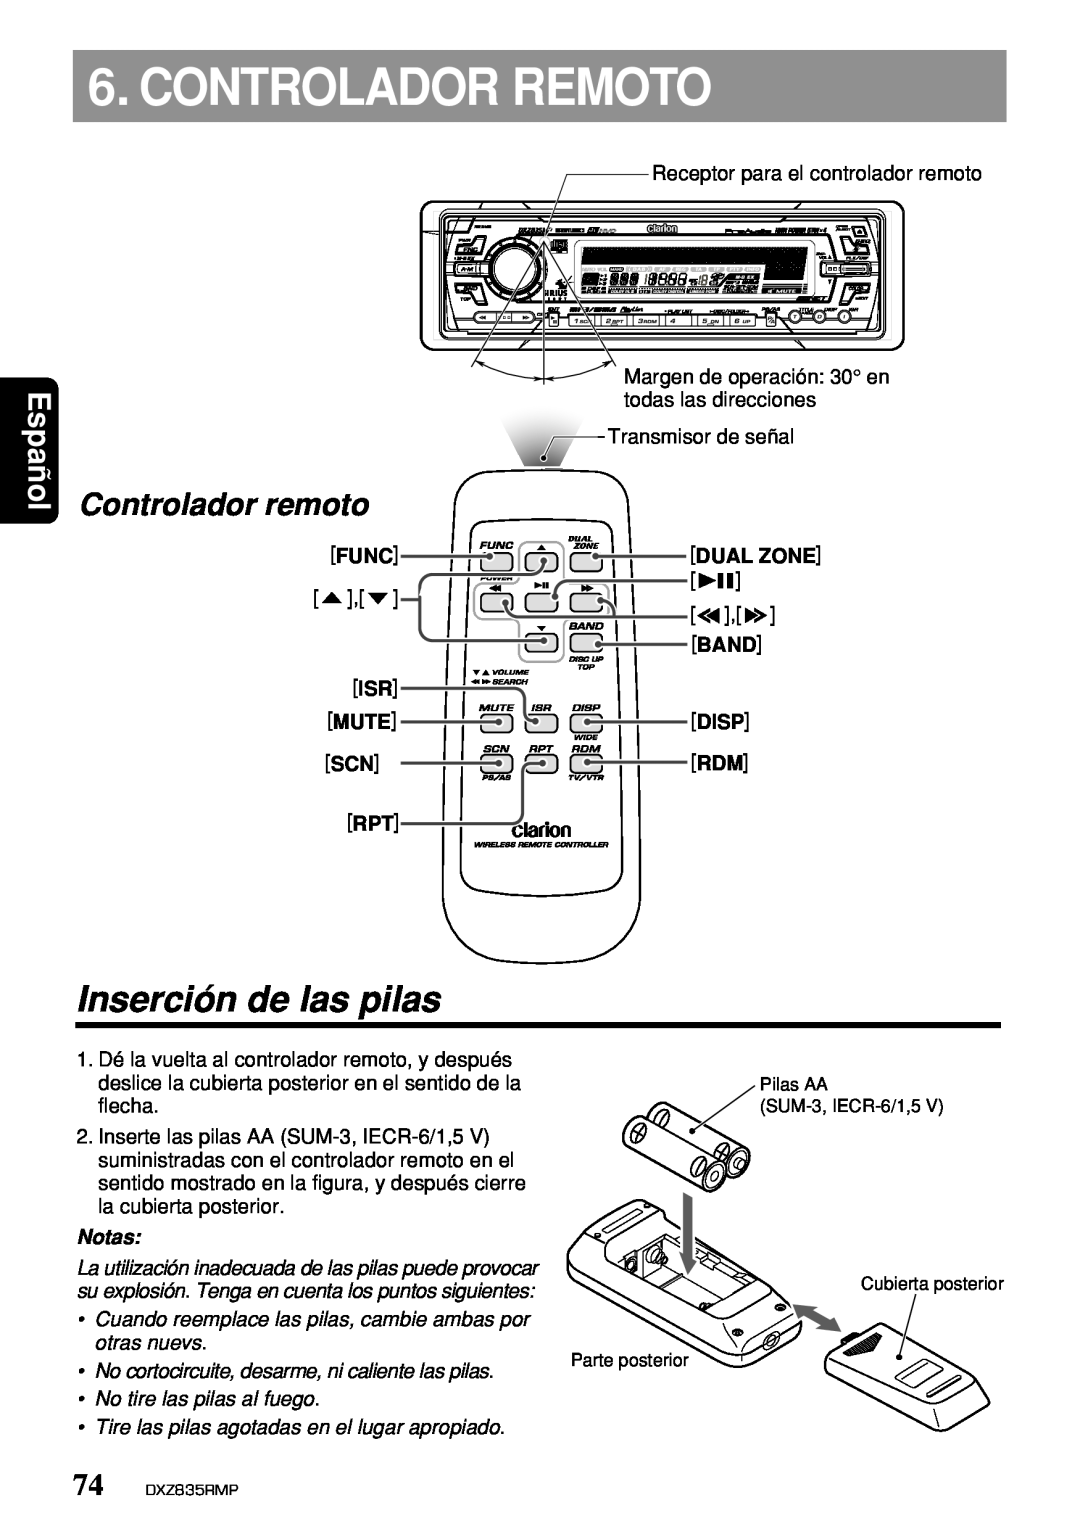 Clarion DXZ835MP Controlador Remoto, Inserción de las pilas, Controlador remoto, Español, Func, Dual Zone, Band, Mute 